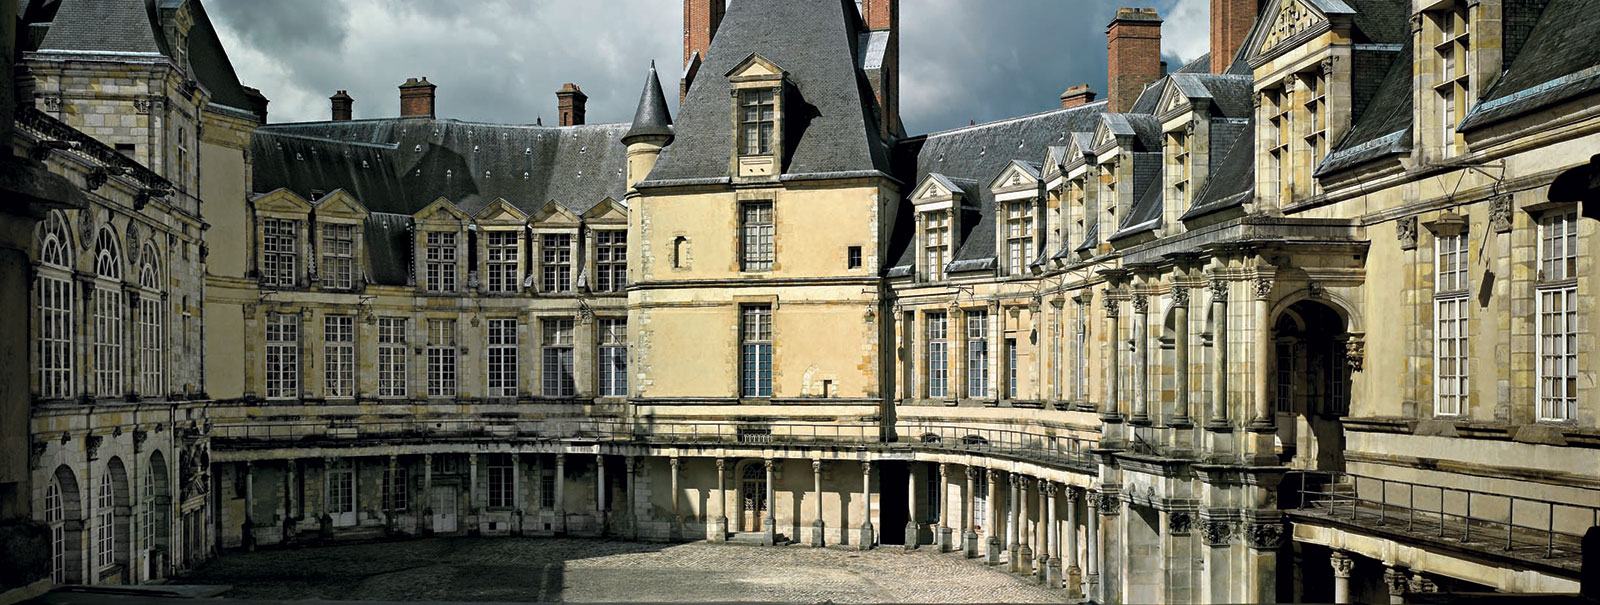 ARCHI/MAPS — The Chateau de Fontainebleau, France